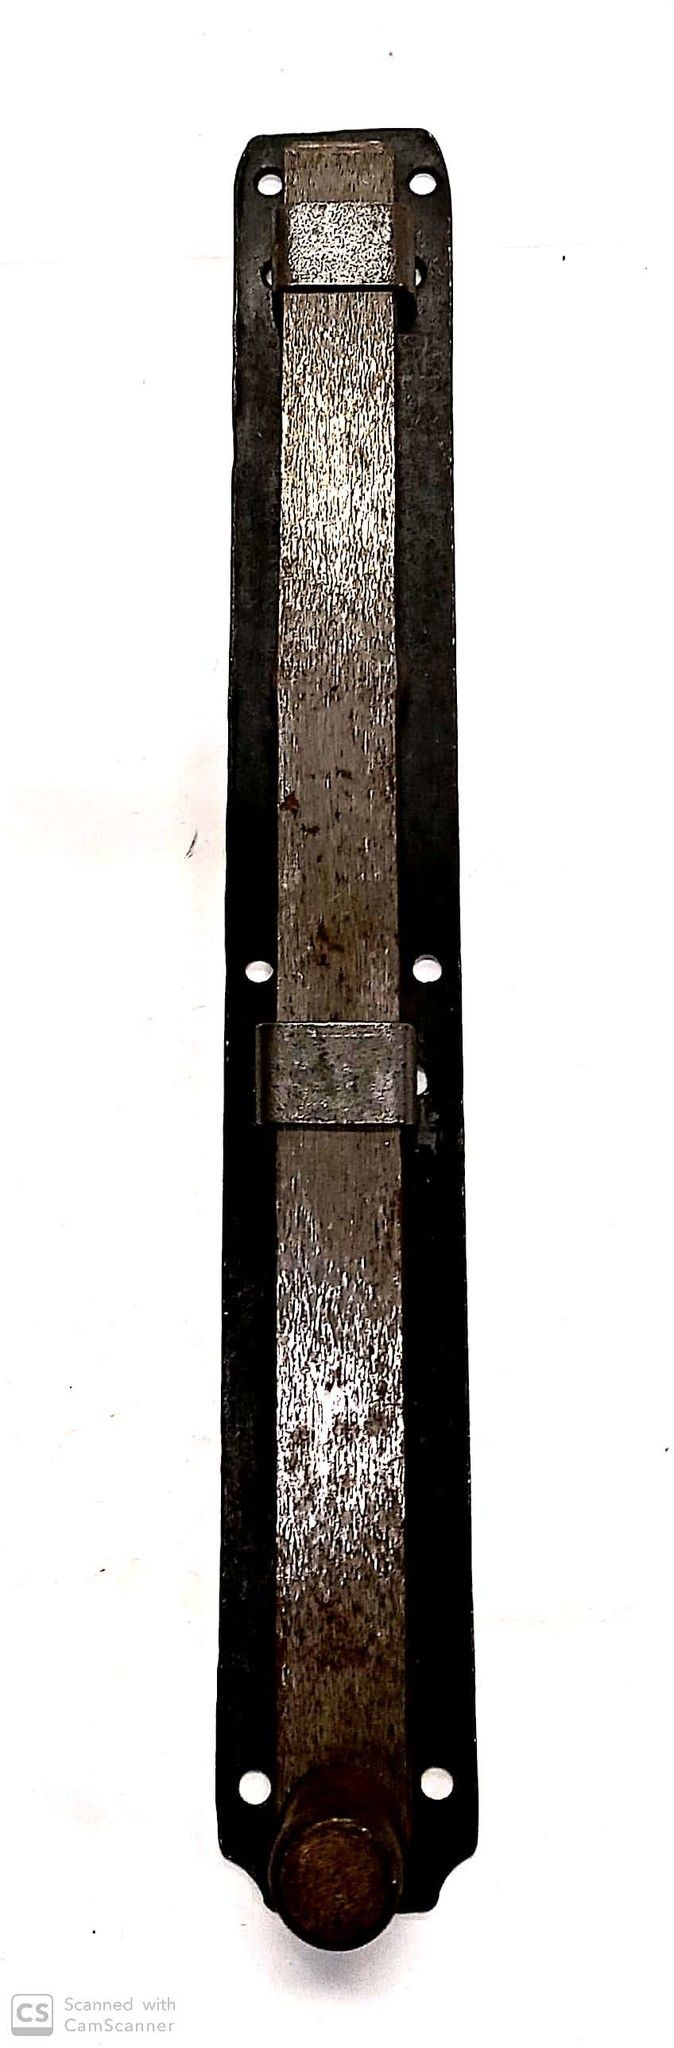 Catenaccio verticale su piastra cm 30 modello vecchio